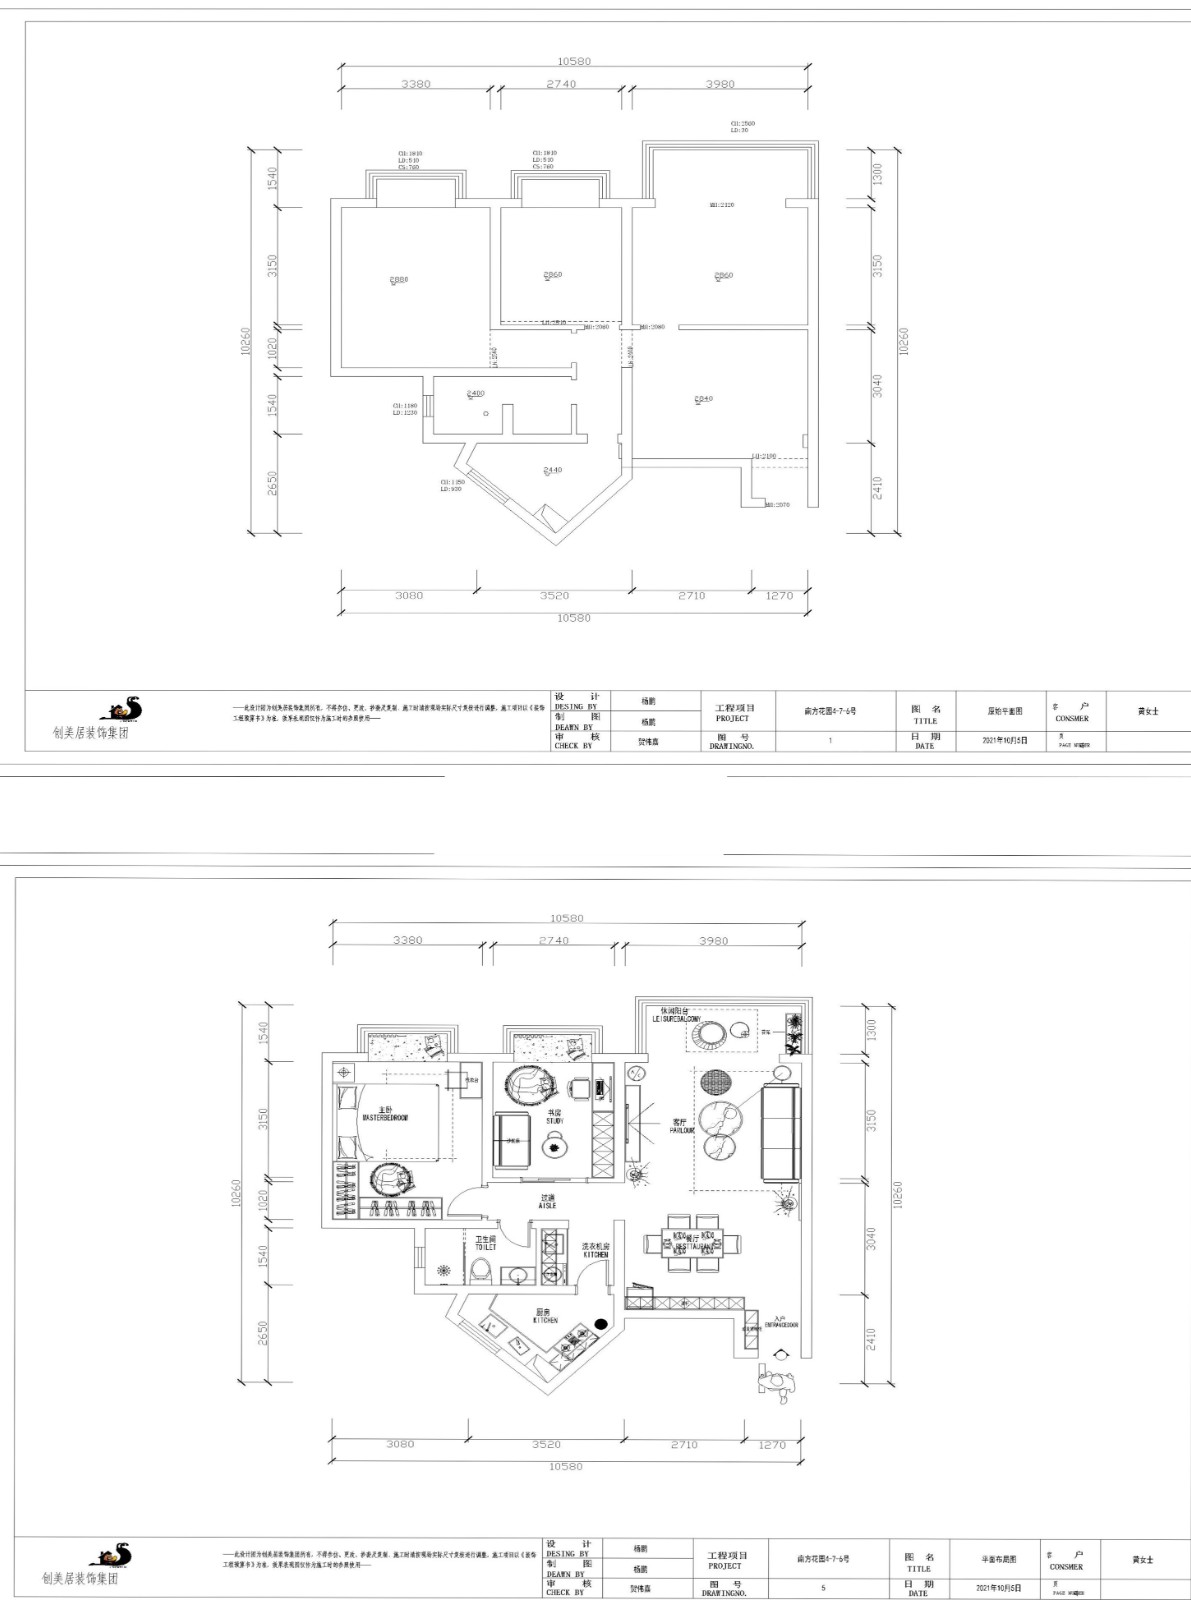 90现代两房装修效果图,武侯区南方花园旧房改造装修案例效果图-美广网(图1)